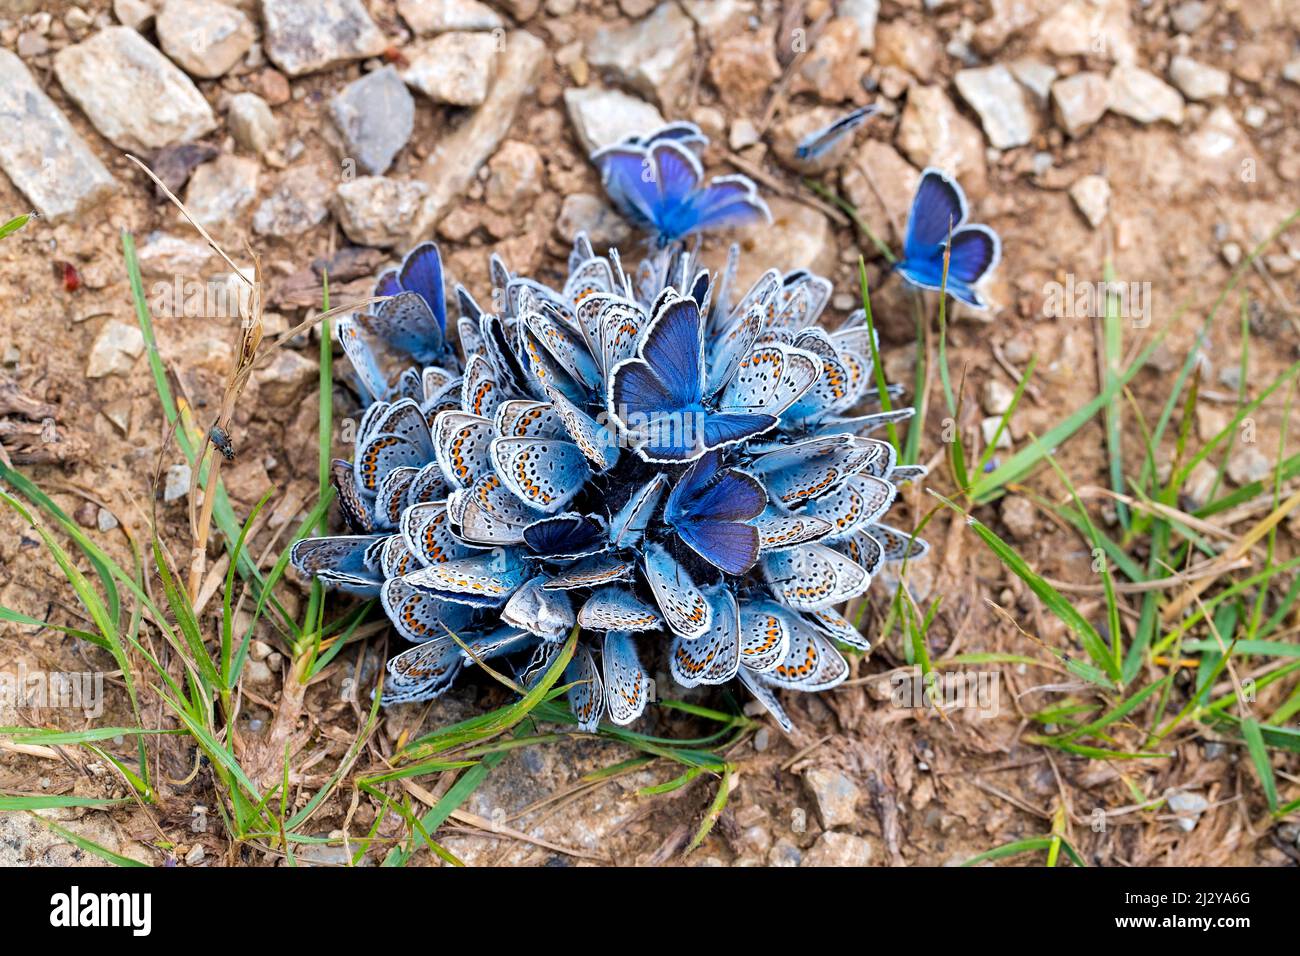 Agrégation de papillons bleus communs / papillon bleu commun européen (Polyommatus icarus) sur sol humide, appelé boue-flaques Banque D'Images